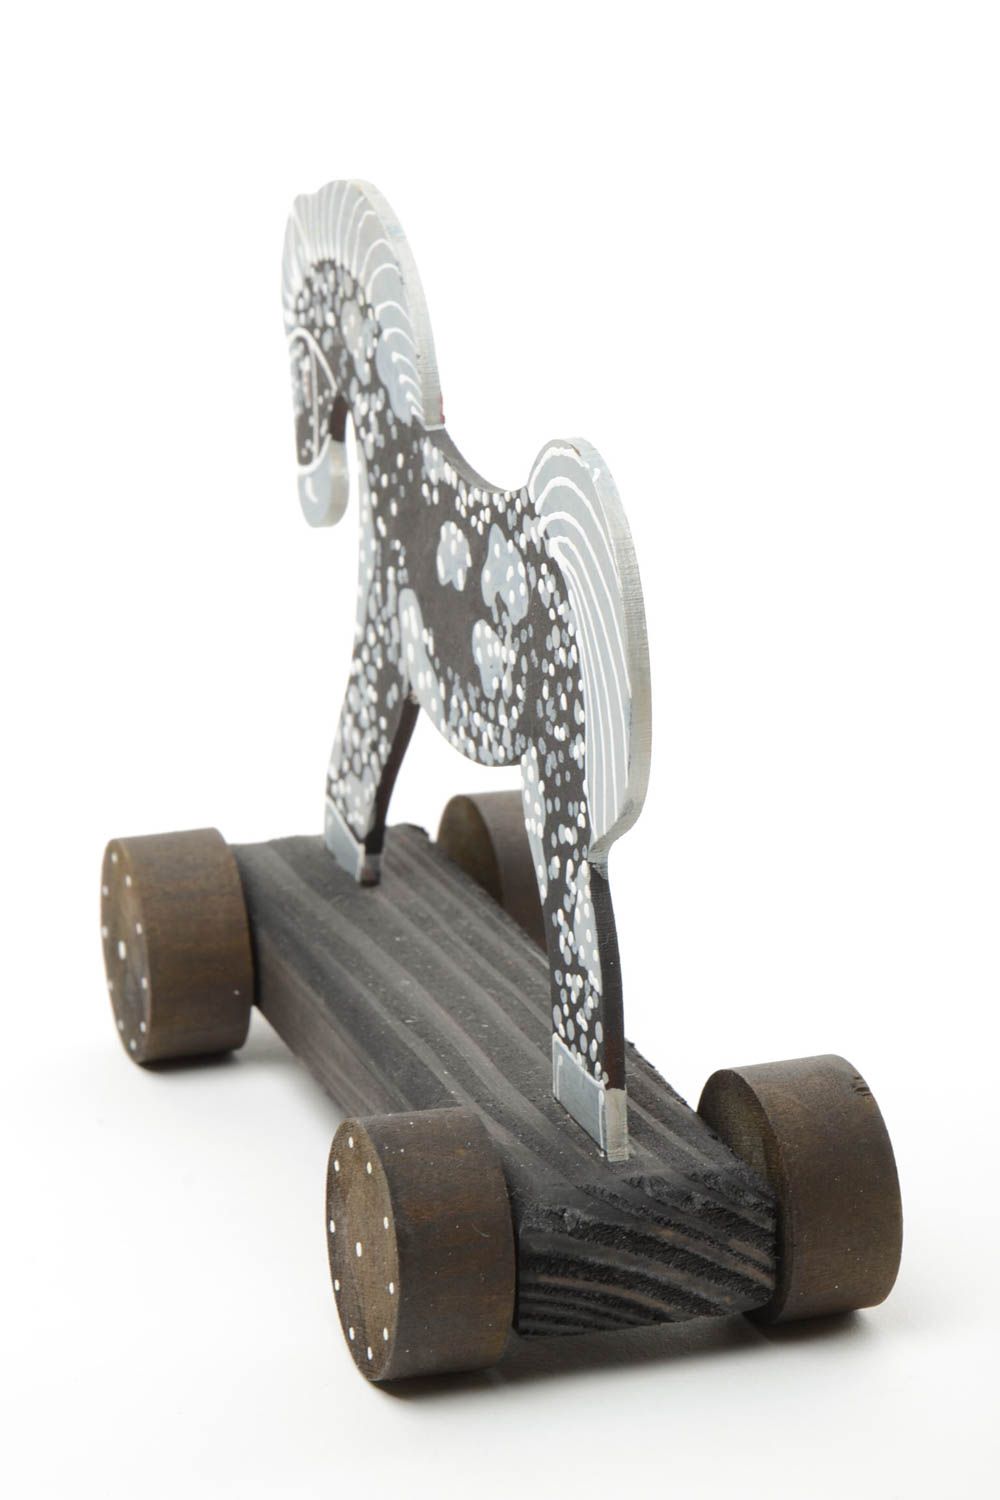 Игрушка лошадка на колесиках небольшого размера деревянная расписная хэнд мейд фото 3